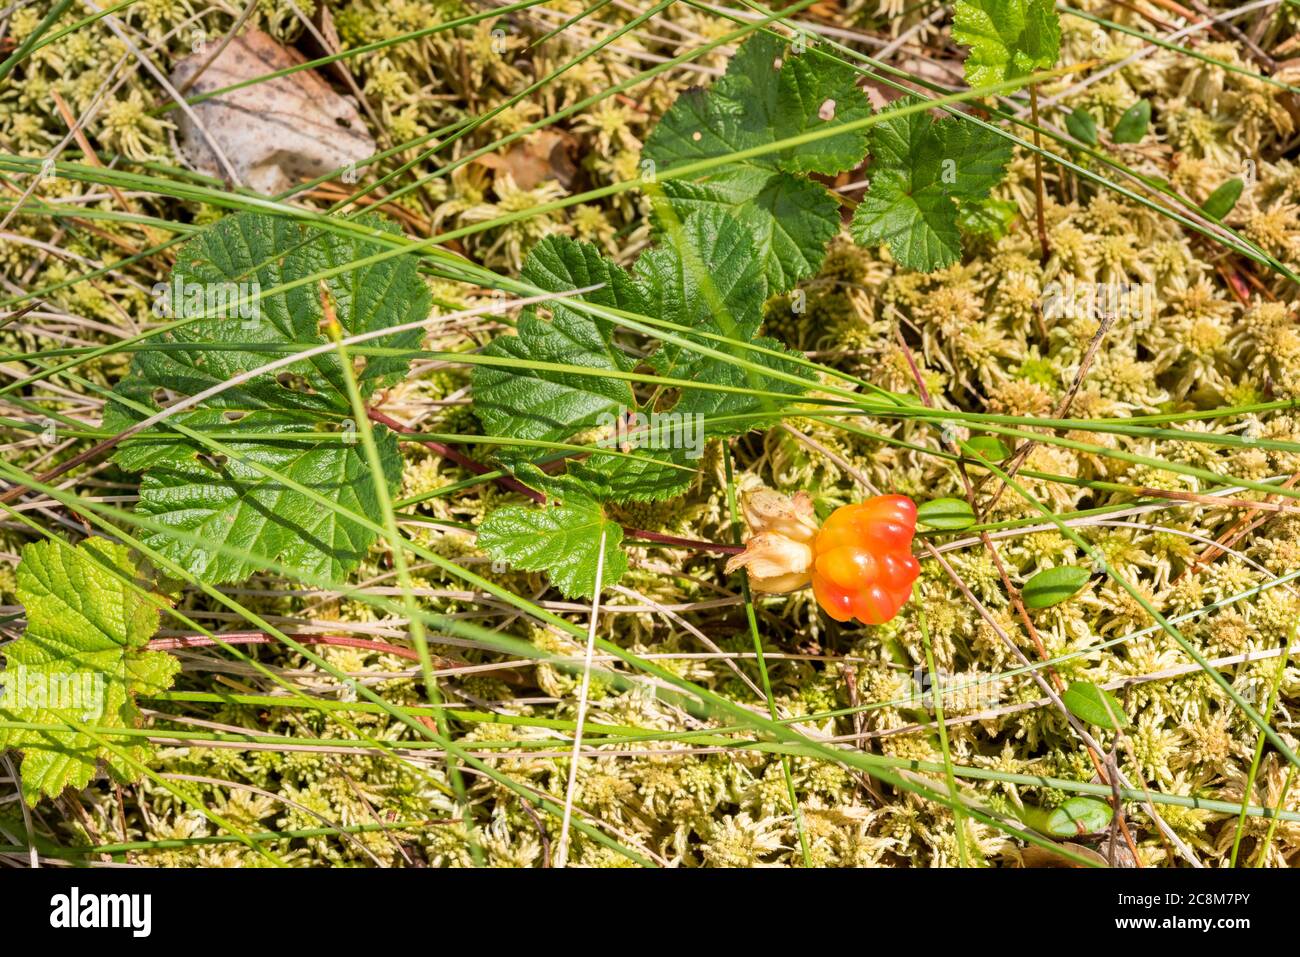 Moltebeere wächst auf Sphagnum Moos. Ein сreeping-Stiel mit kleinen ovalen Blättern ist Preiselbeere. Sonniger Tag im sphagnum Moor. Makrofotografie. Stockfoto